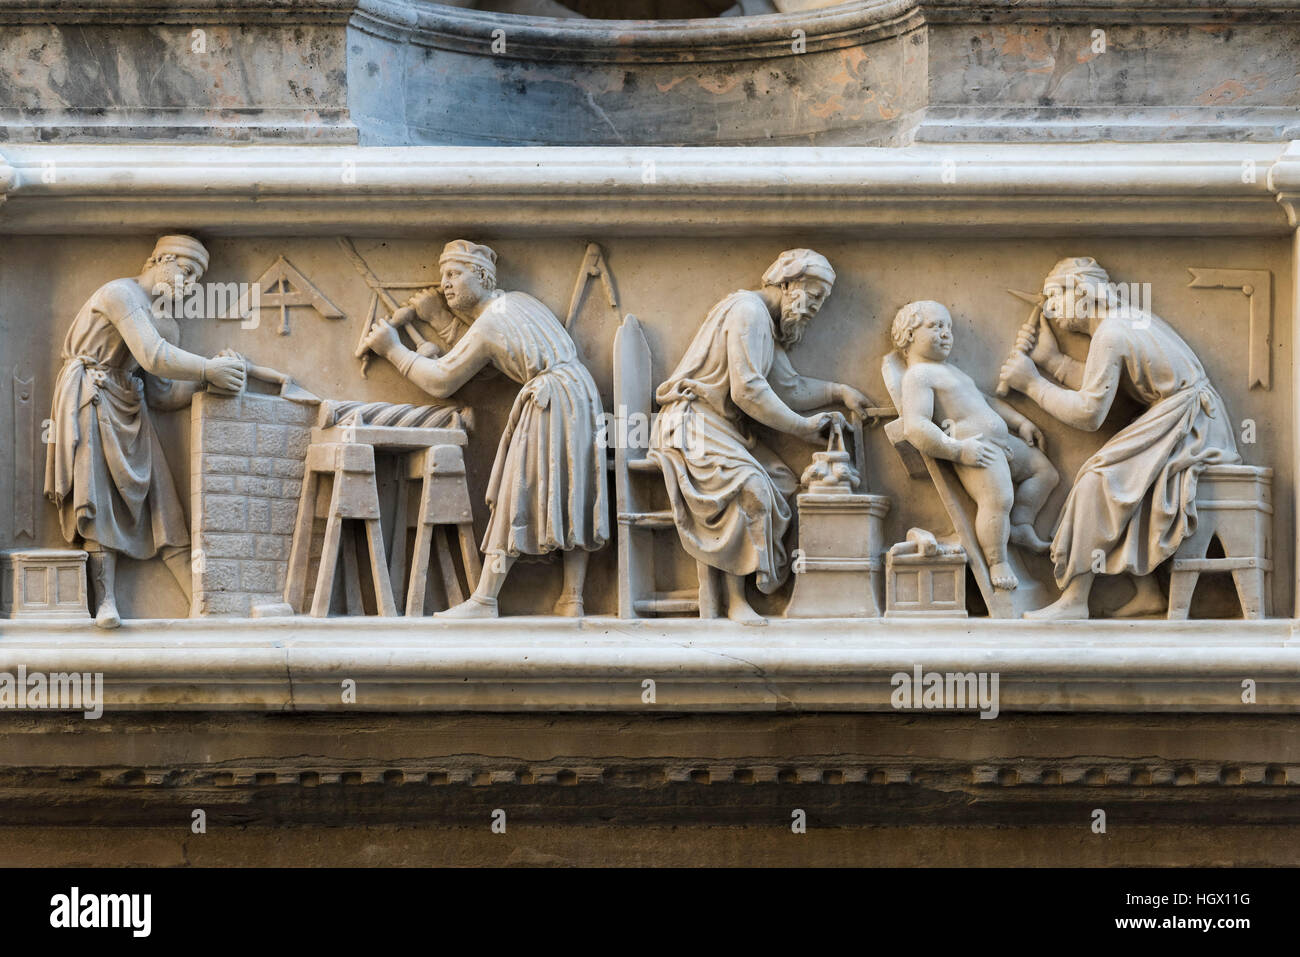 Firenze. L'Italia. Rilievo marmoreo raffigurante muratori, intagliatori del legno e scultori sulla facciata di Orsanmichele. Foto Stock